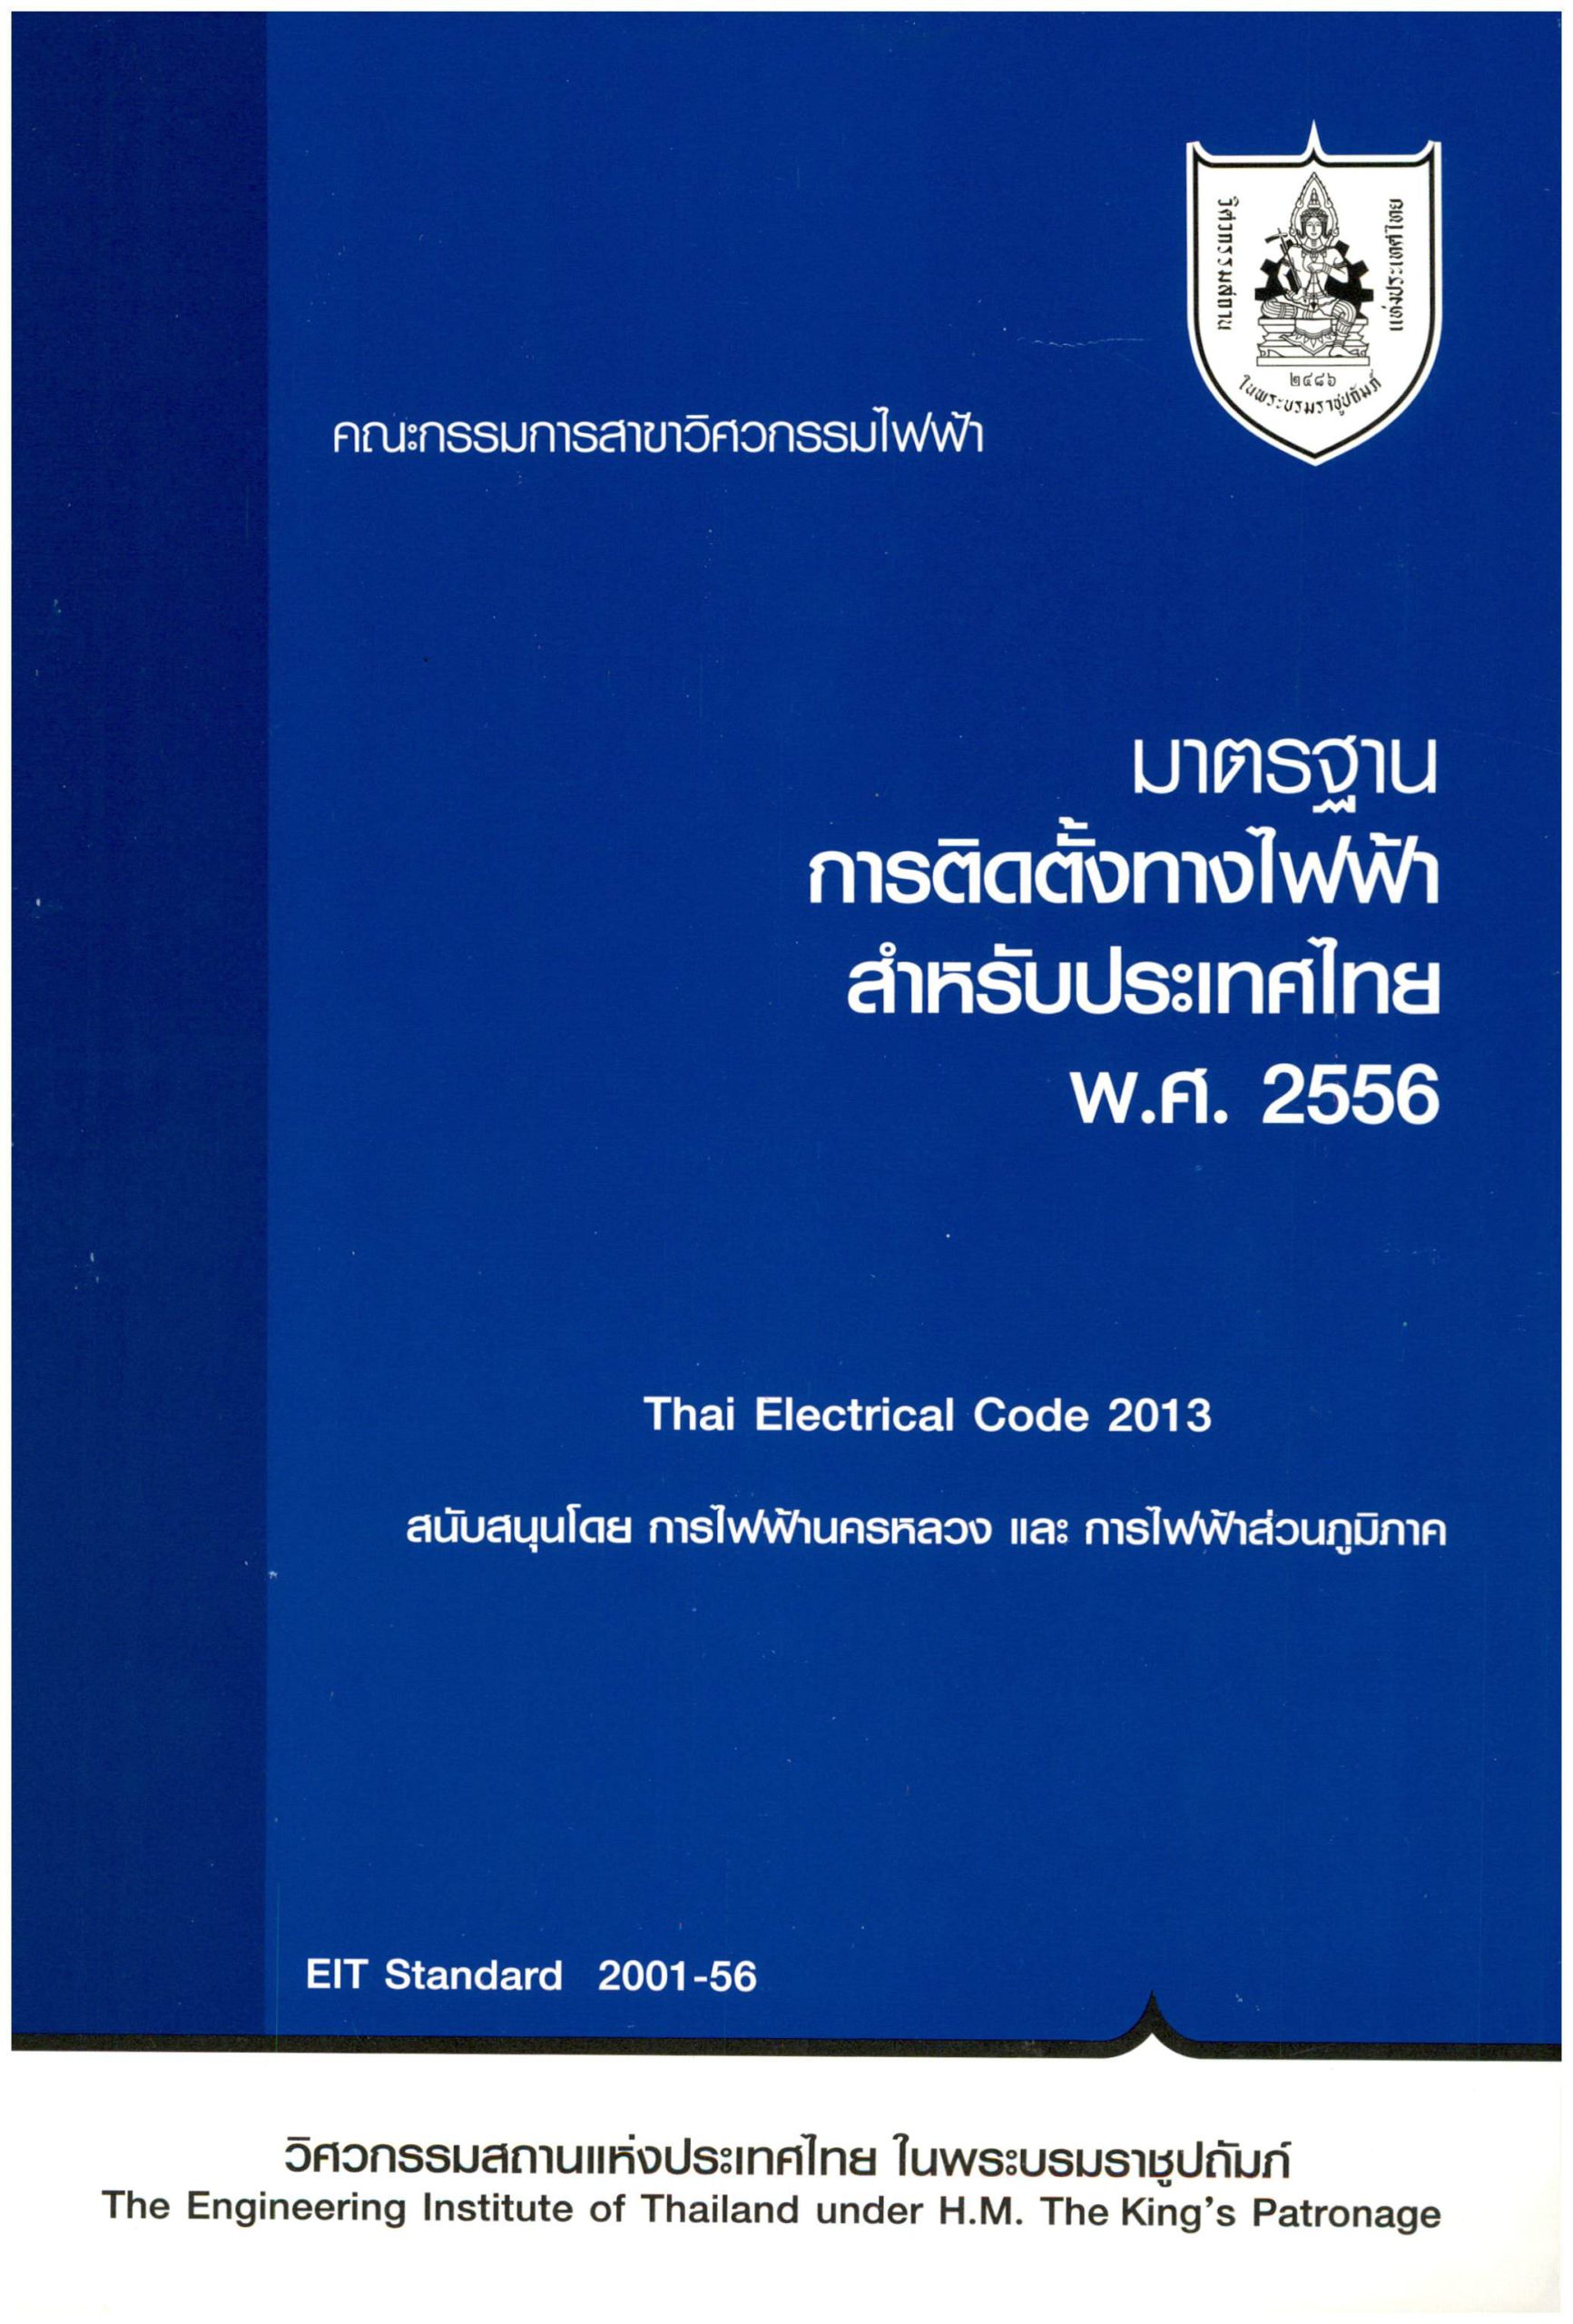 มาตรฐานการติดตั้งทางไฟฟ้าสำหรับประเทศไทย พ.ศ. 2556 | E-Book มาตรฐาน วสท.